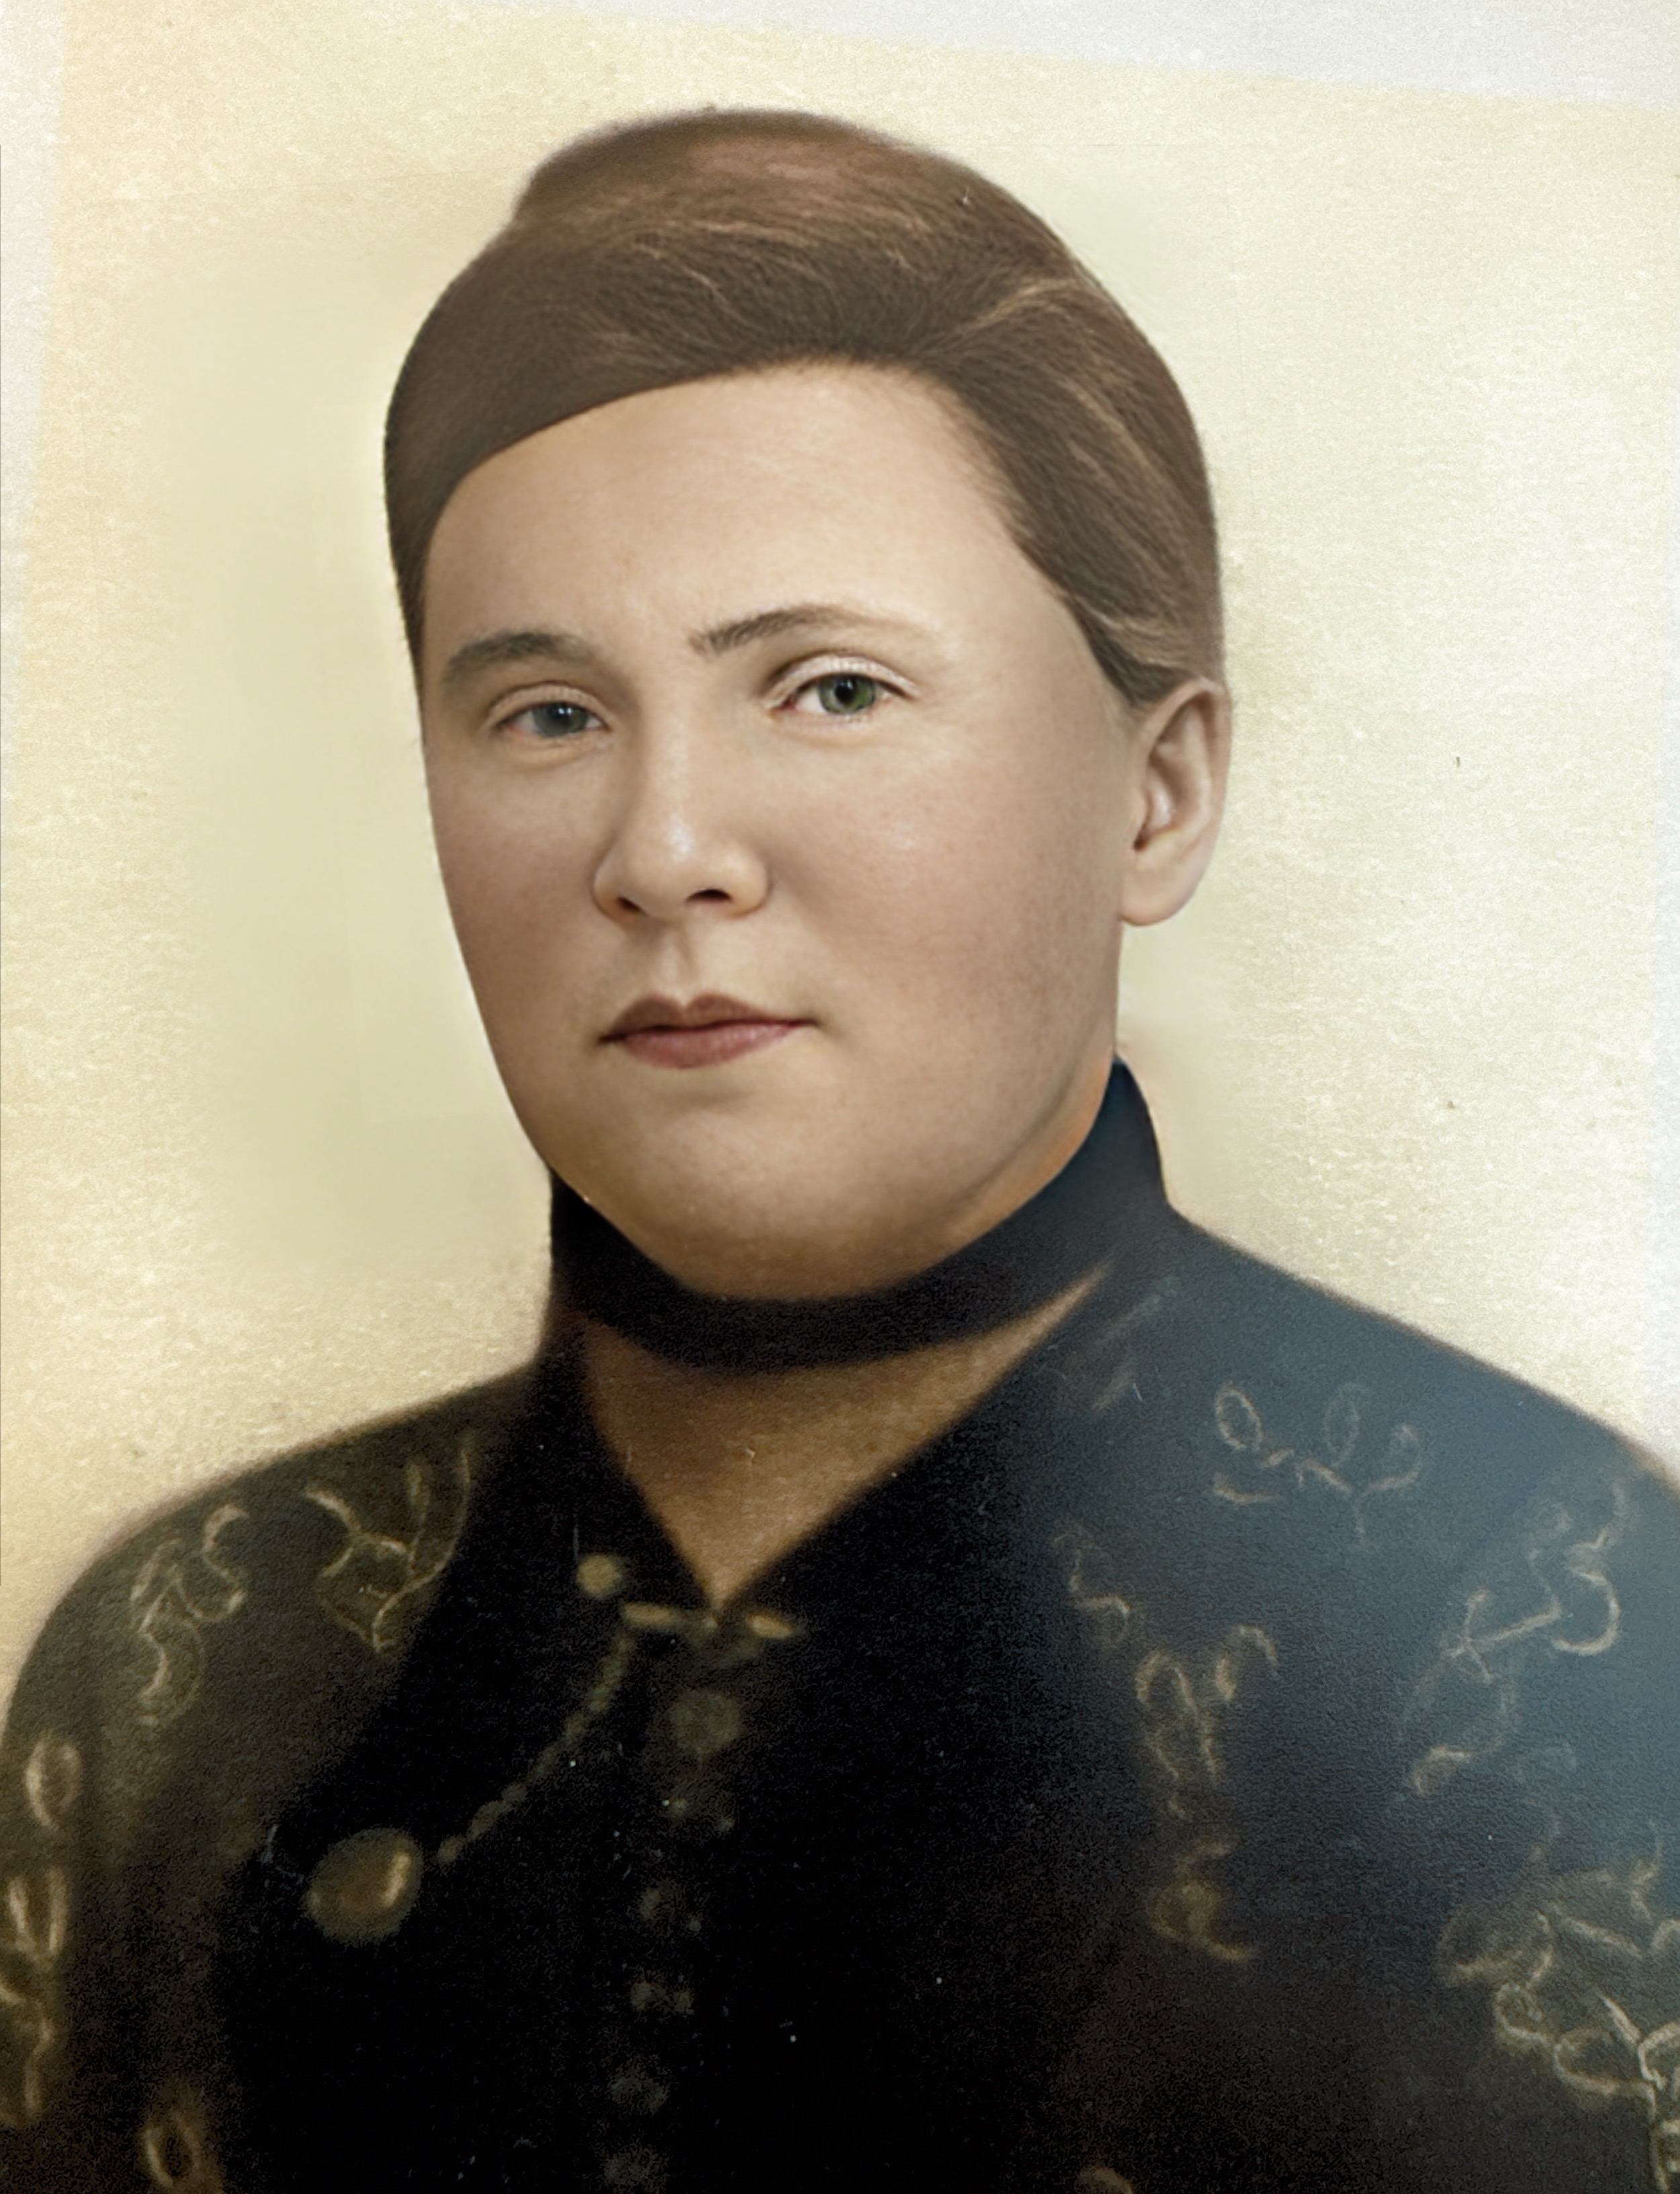 Photo of Emma Jean Slade Gardner, taken around 1890.